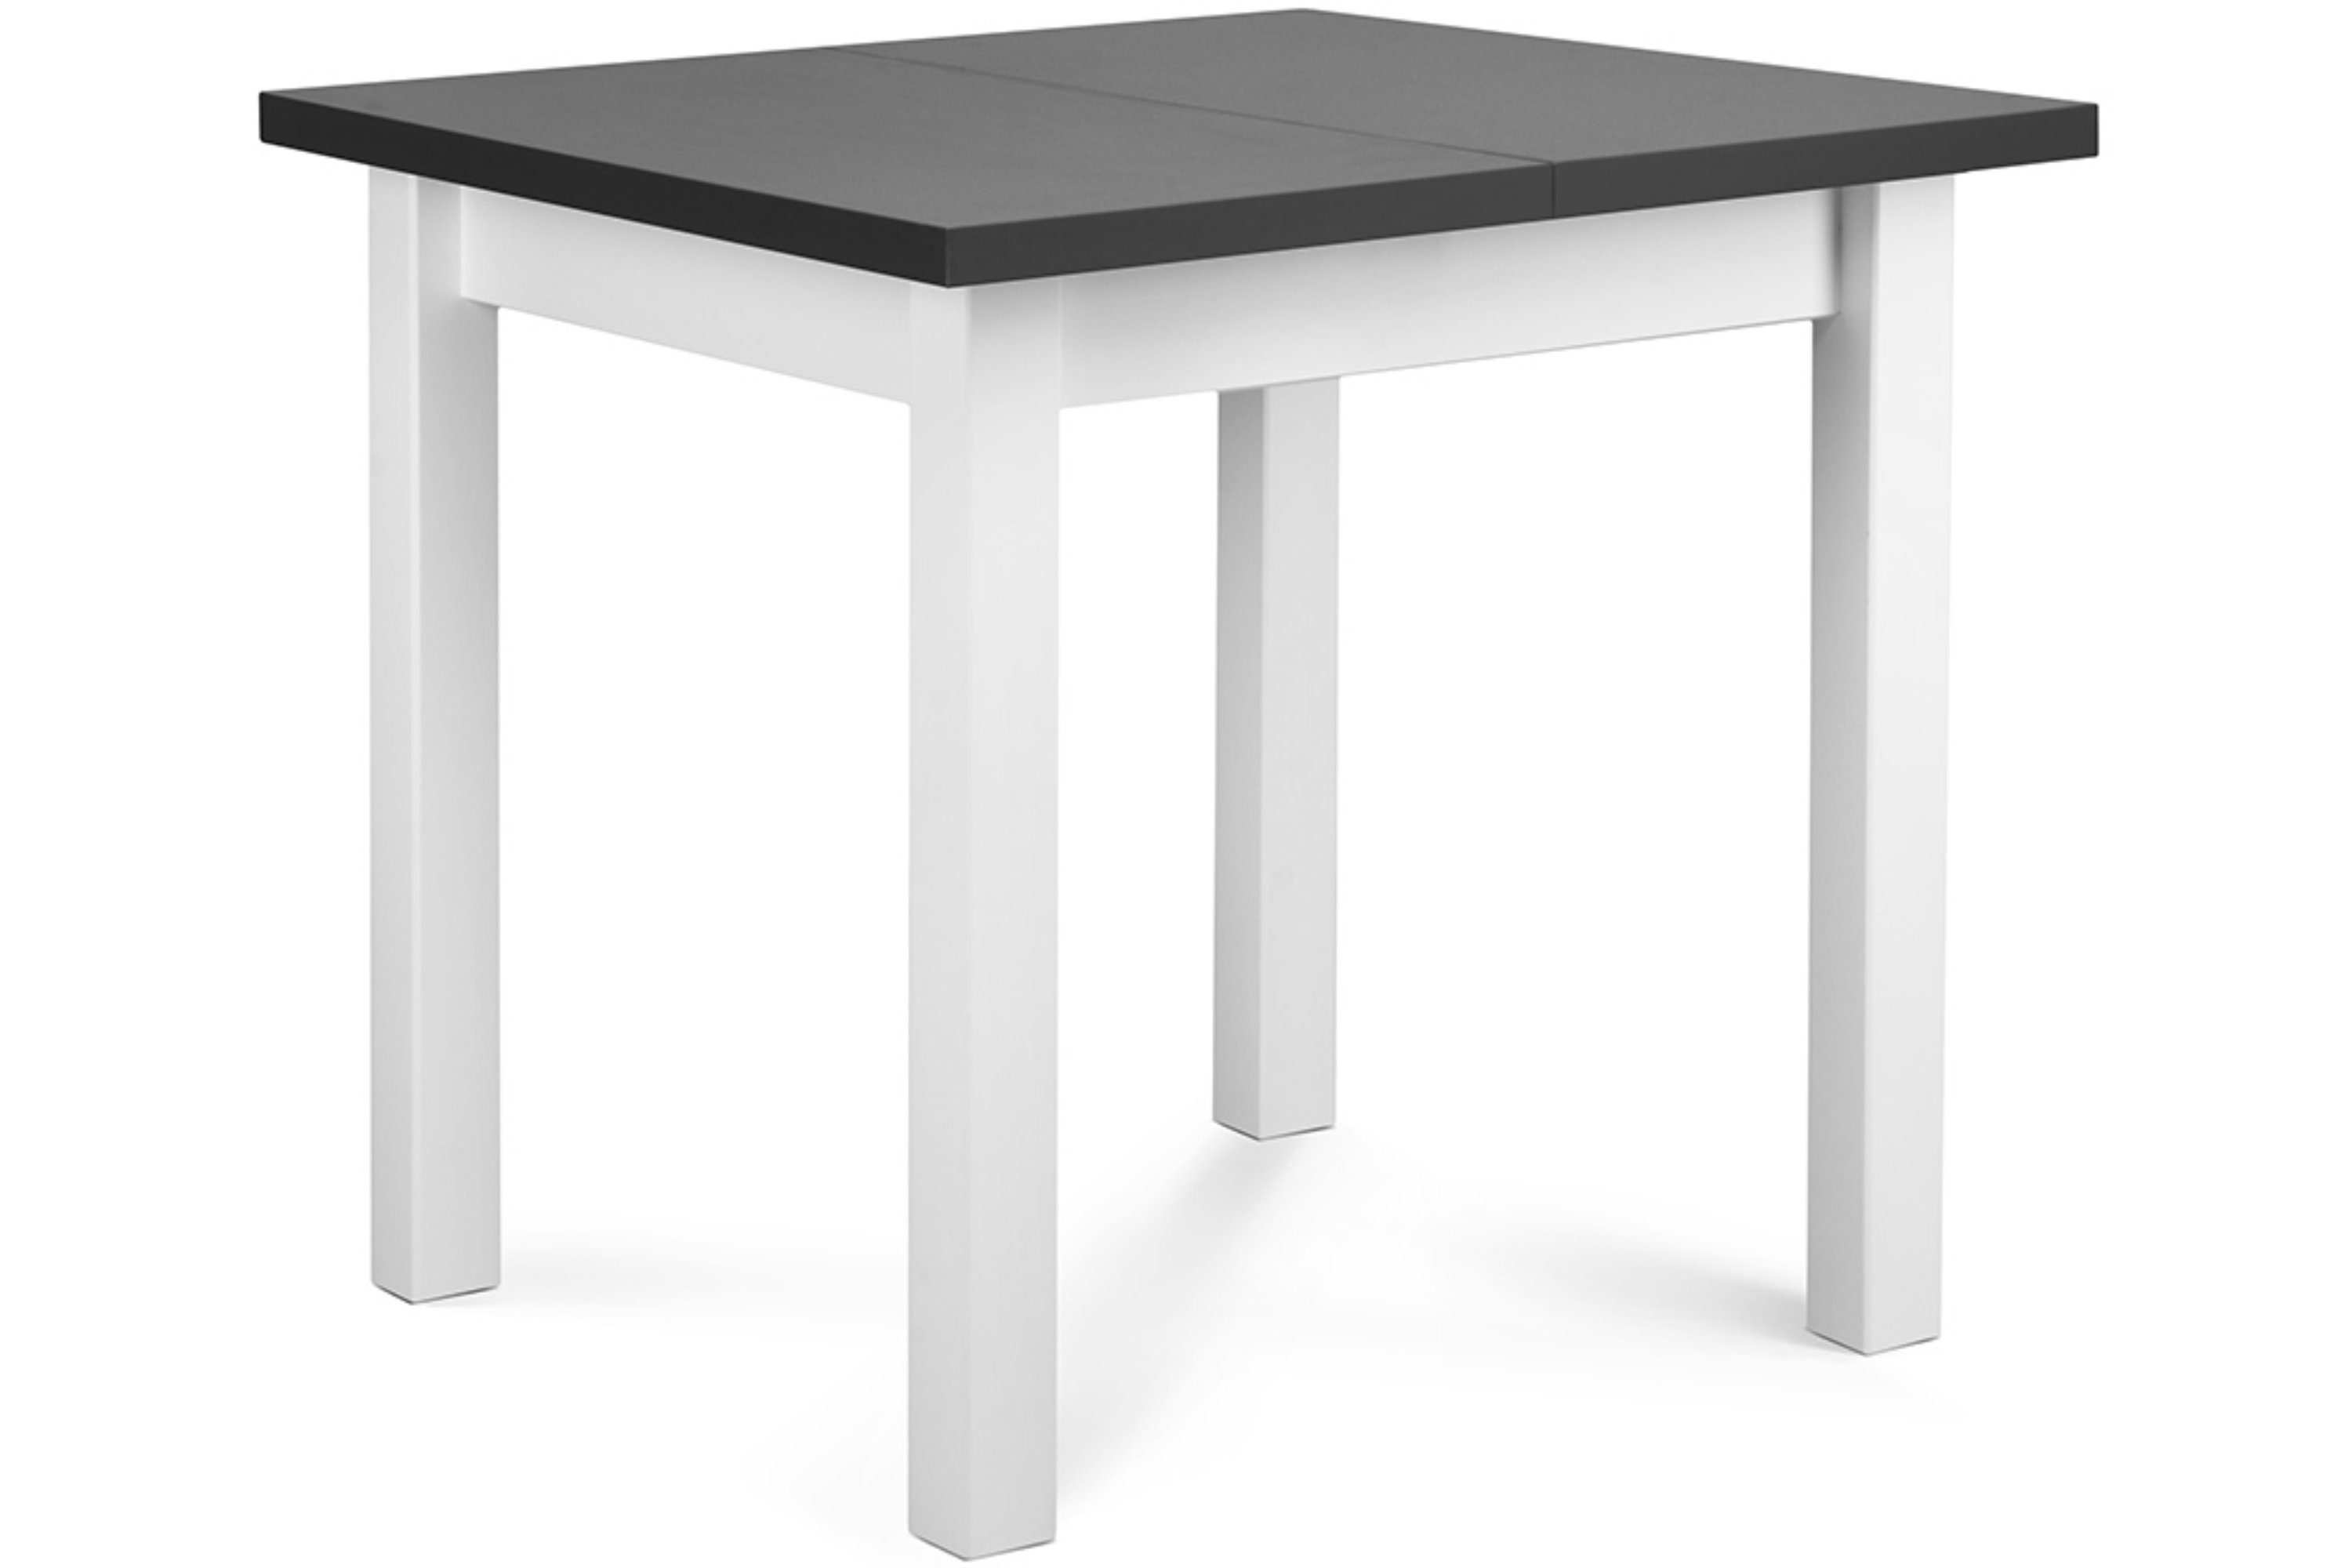 Konsimo Esstisch SALUTO Esszimmertisch Küchentisch 80x80cm, ausziehbar bis 110cm, quadratisch weiß / grau | weiß | grau